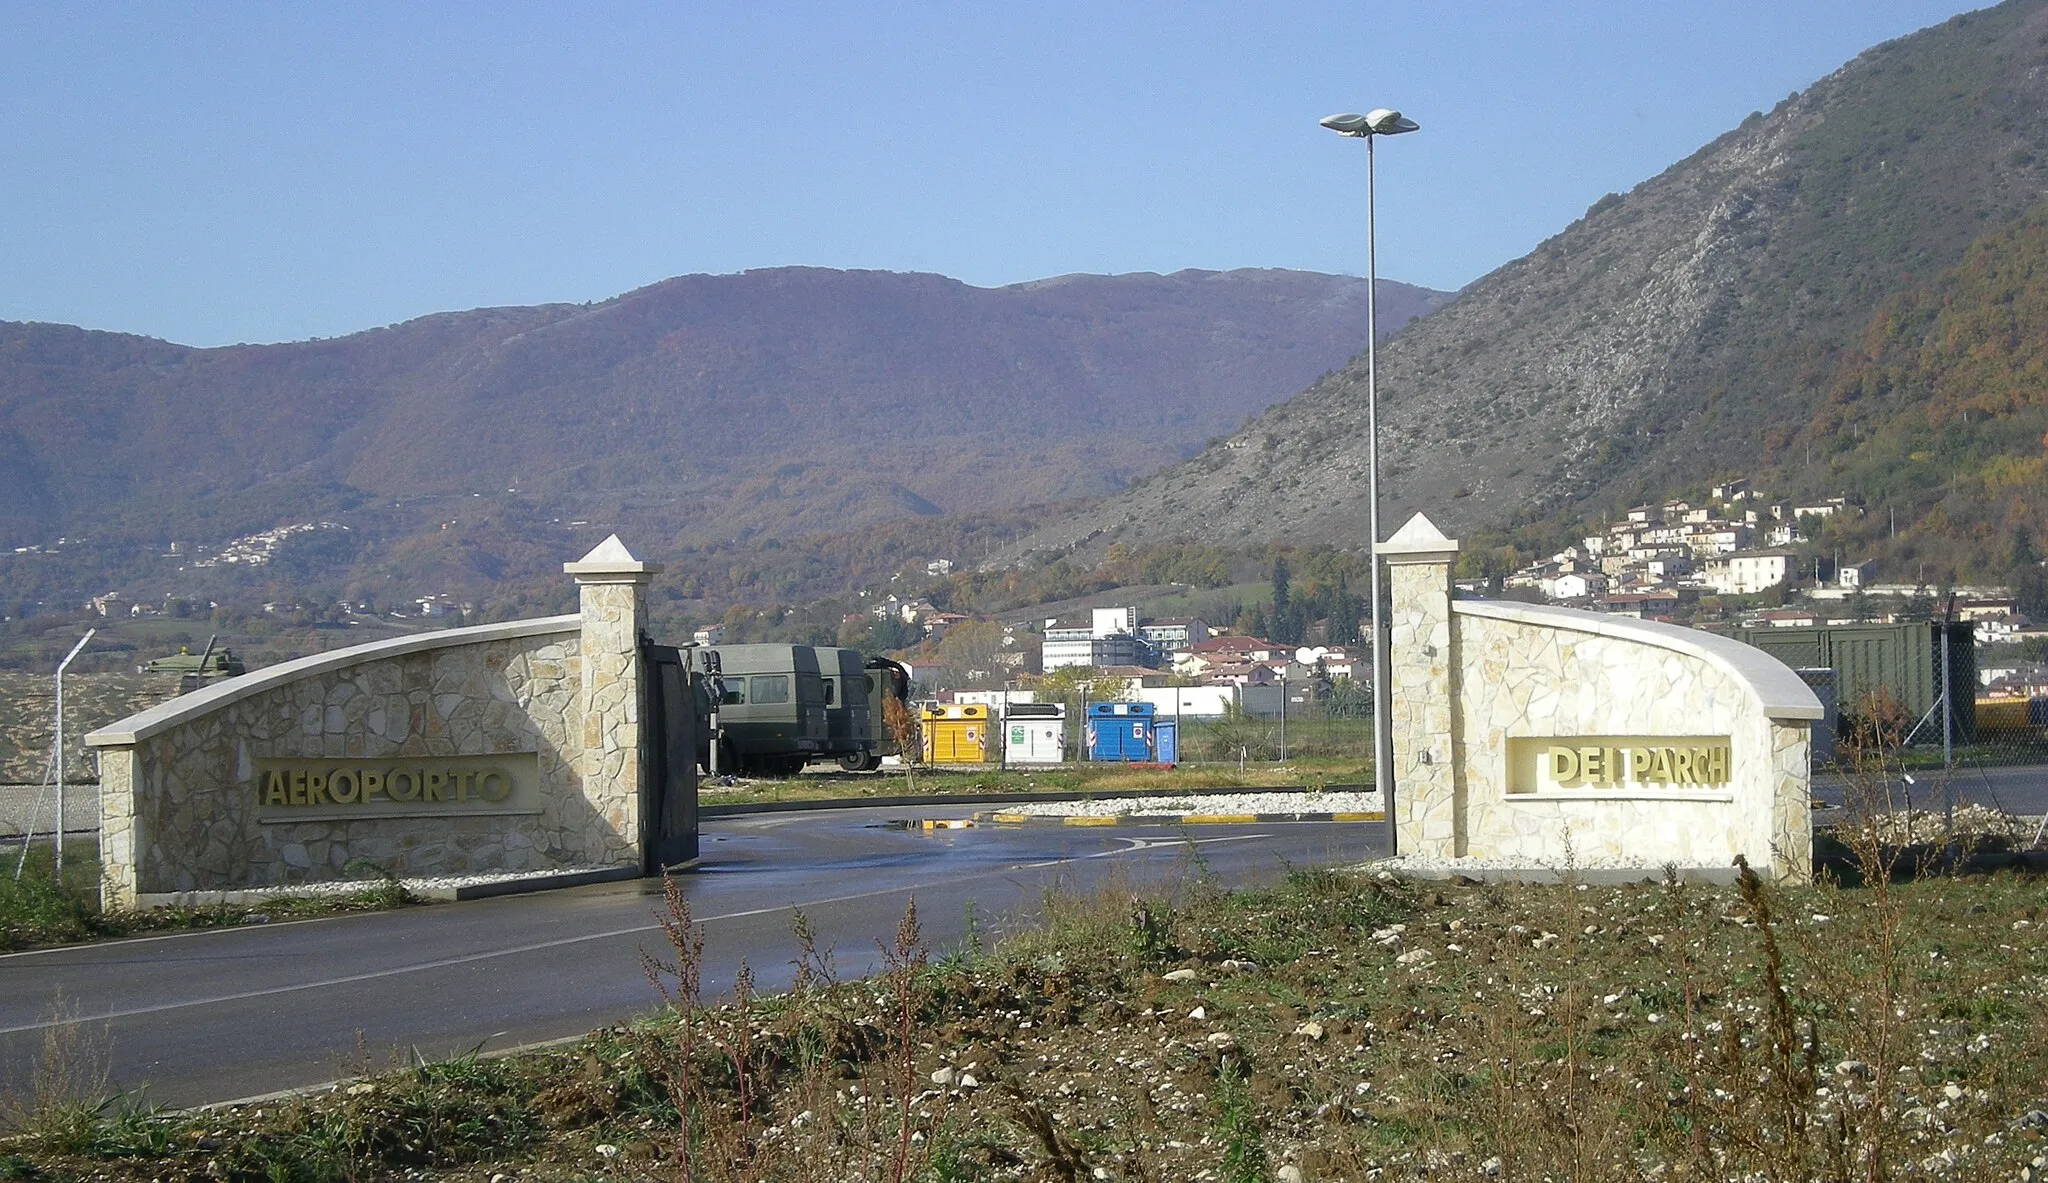 Photo showing: Entrata principale dell'Aeroporto dell'Aquila, meglio conosciuto come Aeroporto dei Parchi, sito in località Preturo